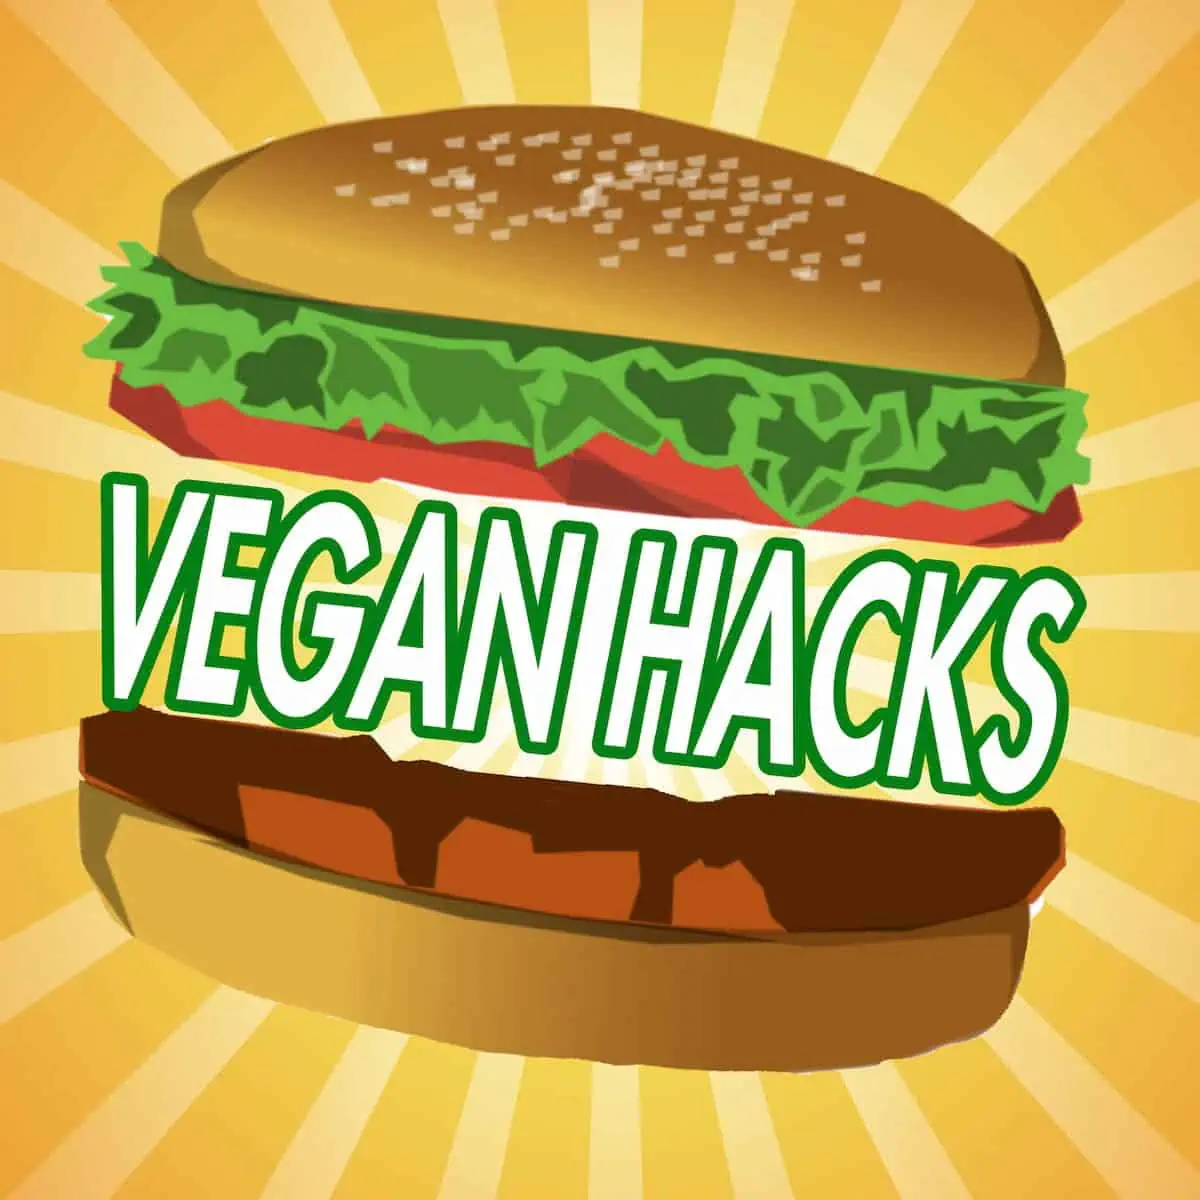 Vegan Hacks podcast cover art.